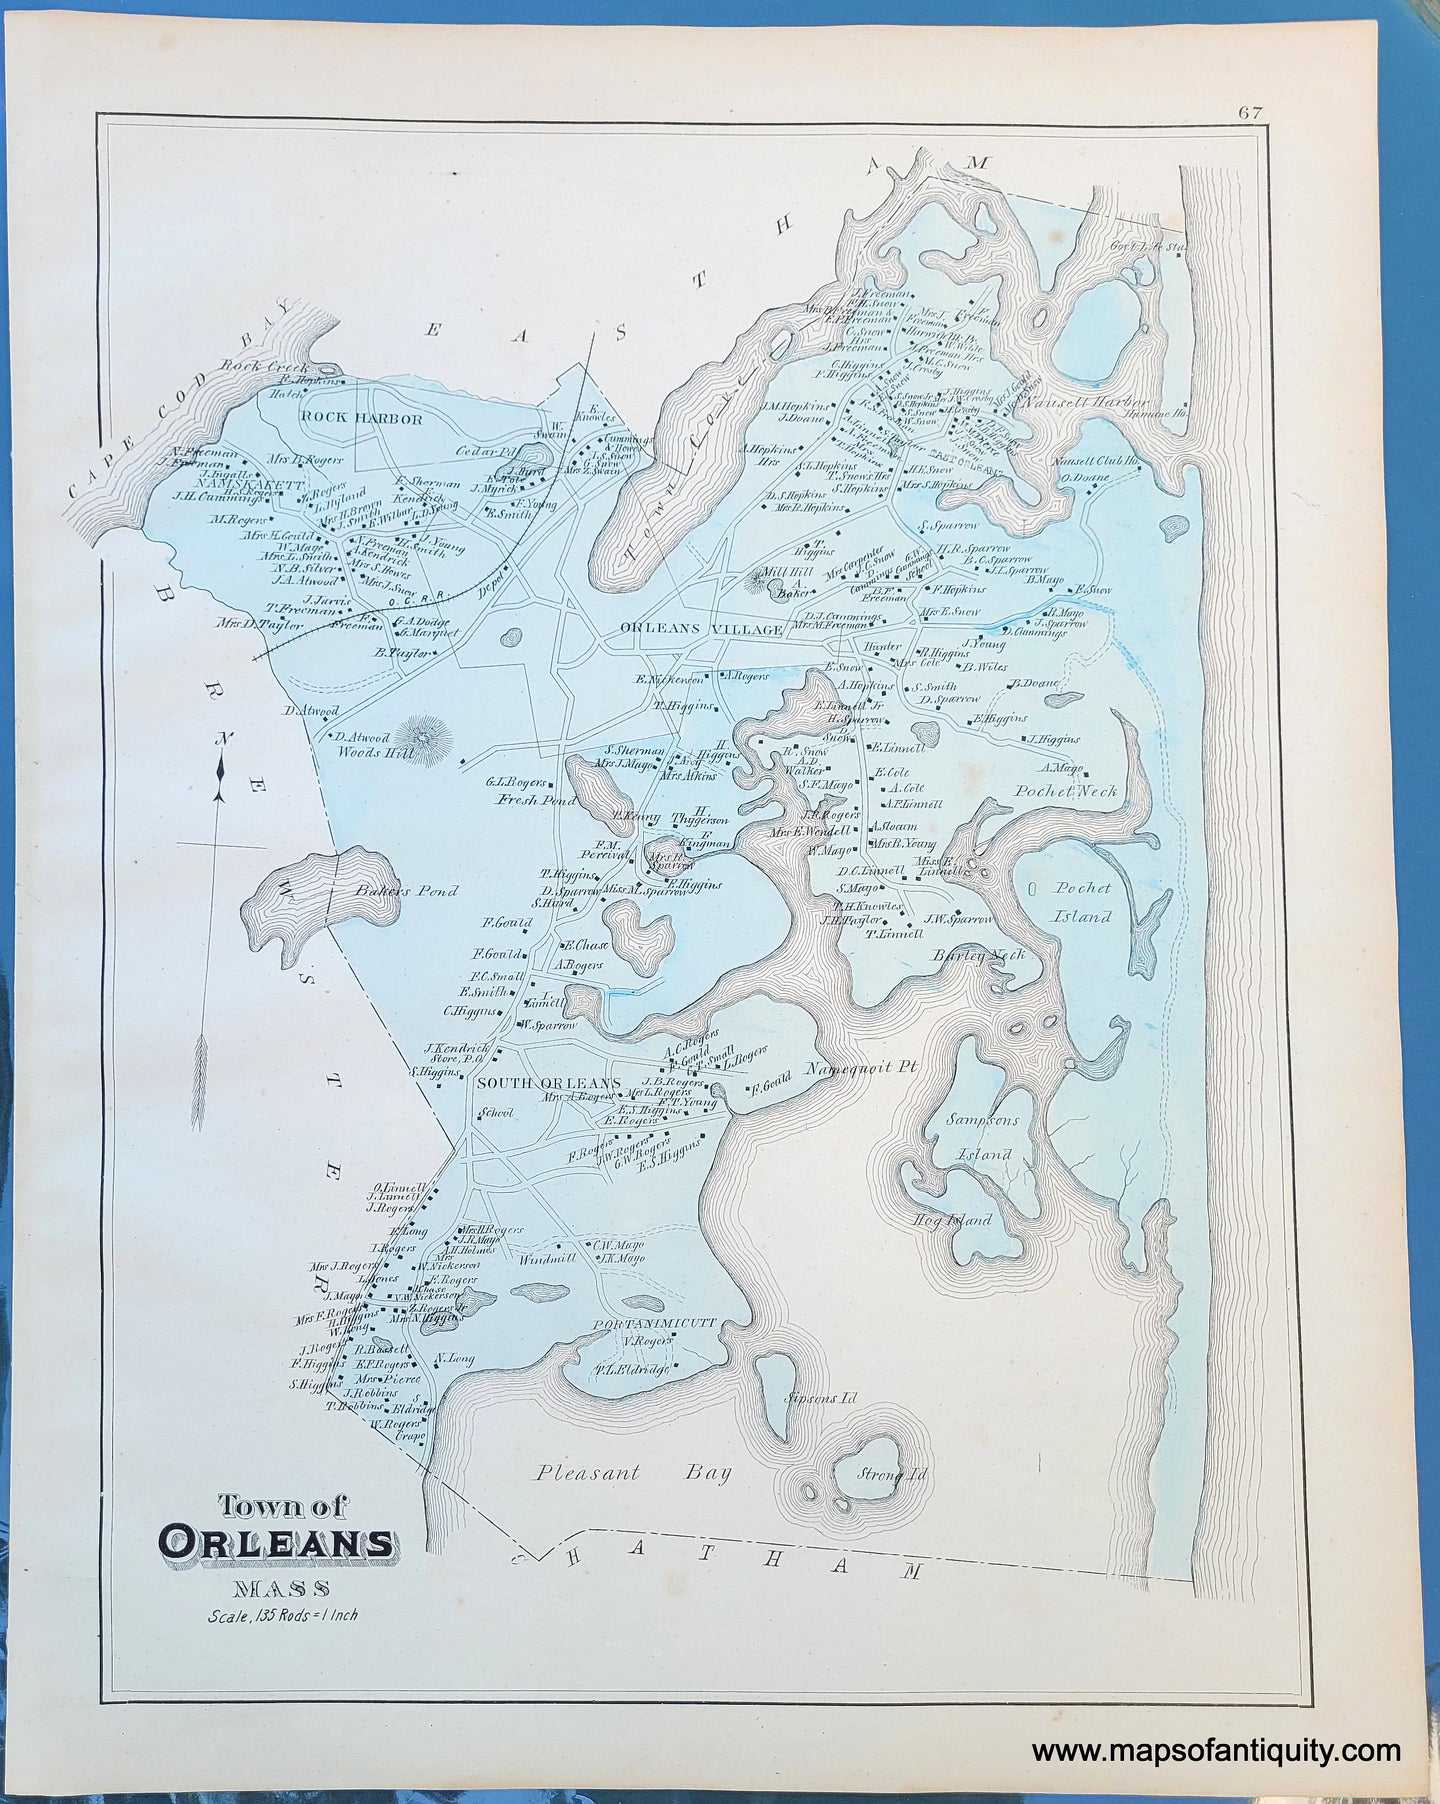 Antique-Map-Town-of-Orleans-Mass.-p.-67-Massachusetts-1880-Walker-Maps-of-Antiquity